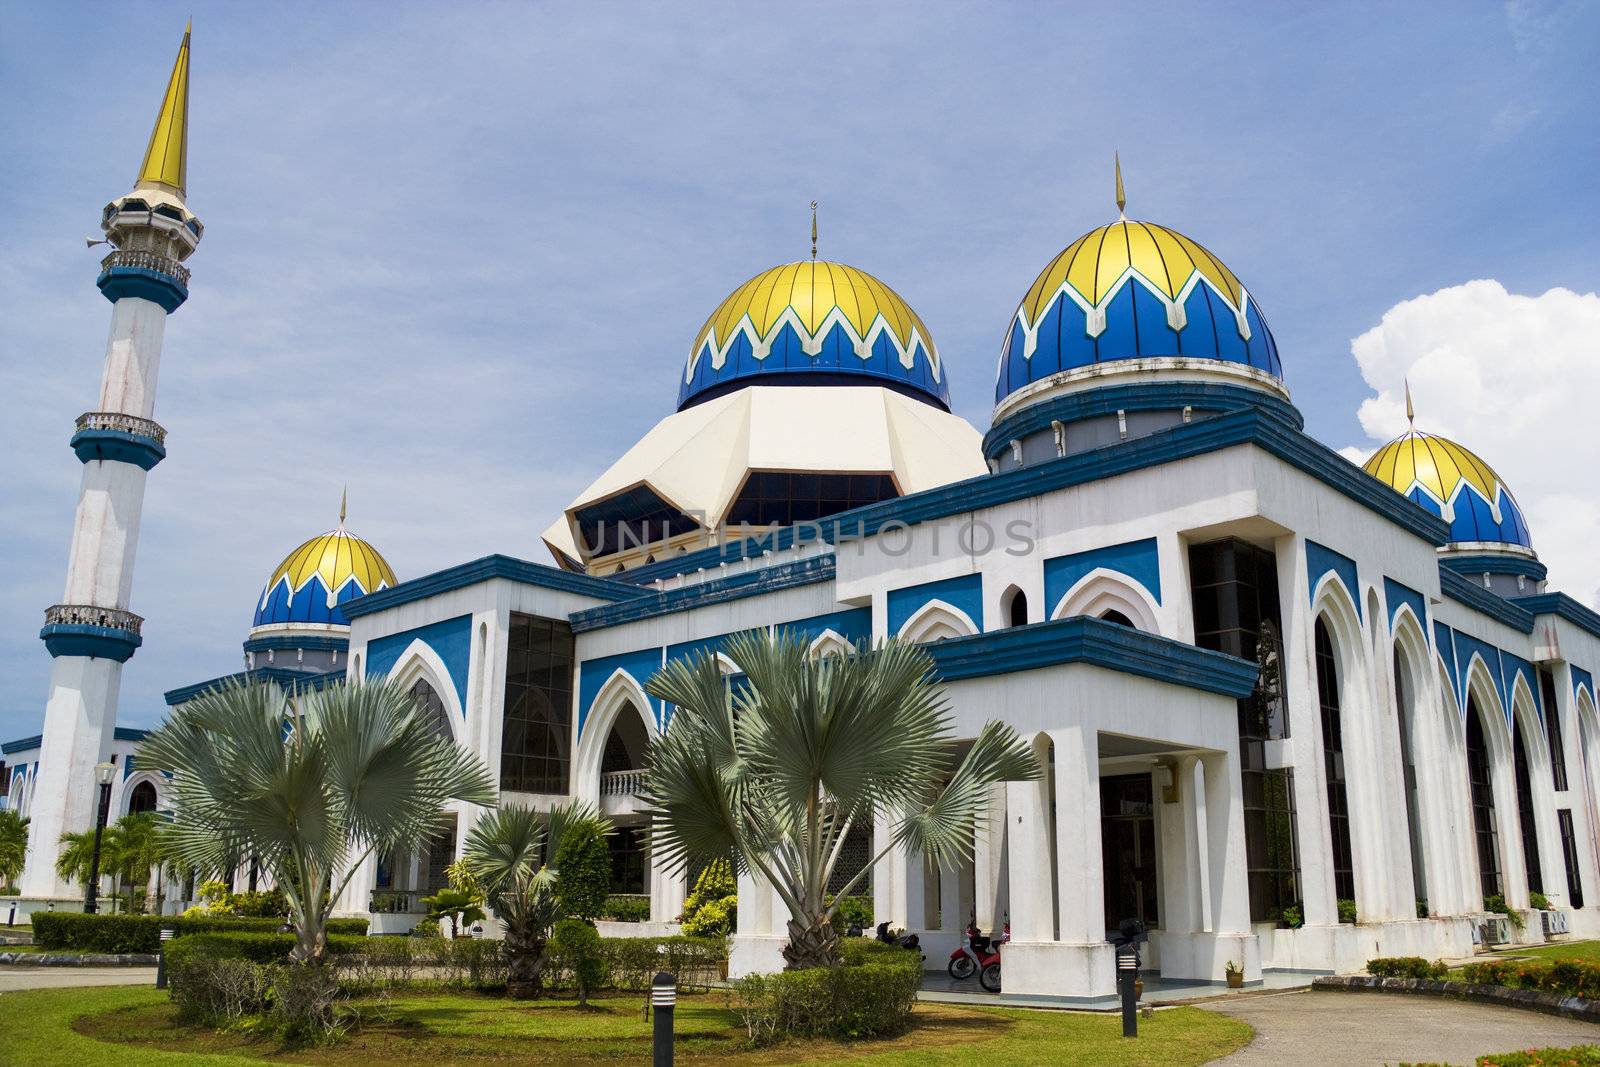 Image of KIPSAS Mosque, located at Kuantan, Pahang, Malaysia.